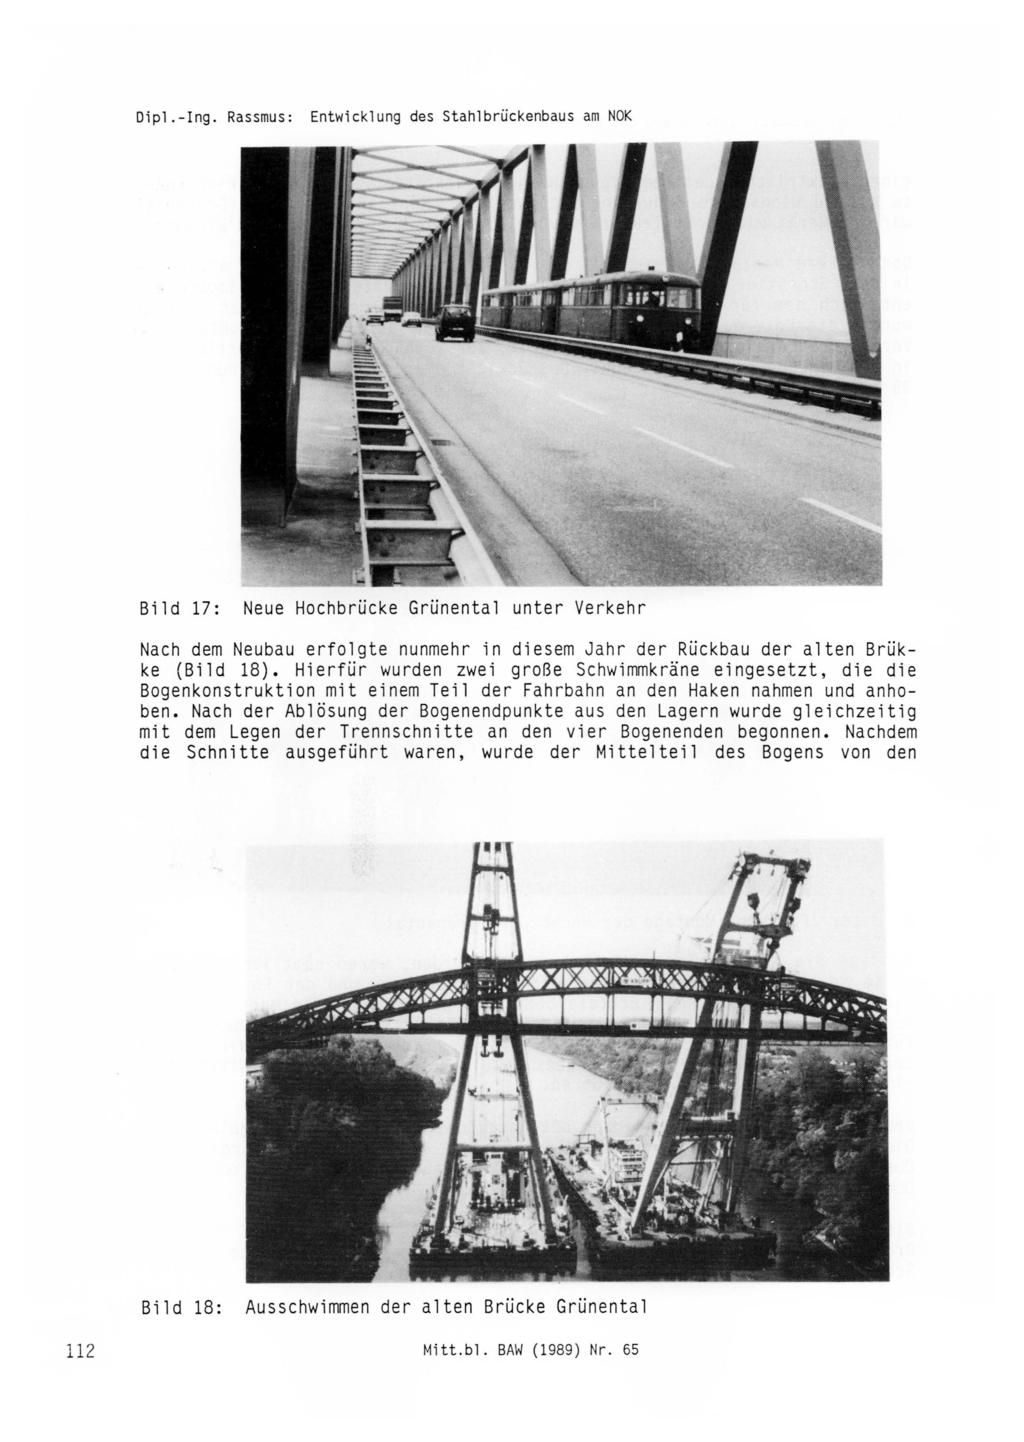 Dipl. -Ing. Rassmus: Bild 17: Neue Hochbrücke Grünental unter Verkehr Nach dem Neubau erfolgte nunmehr in diesem Jahr der Rückbau der alten Brükke (Bild 18).